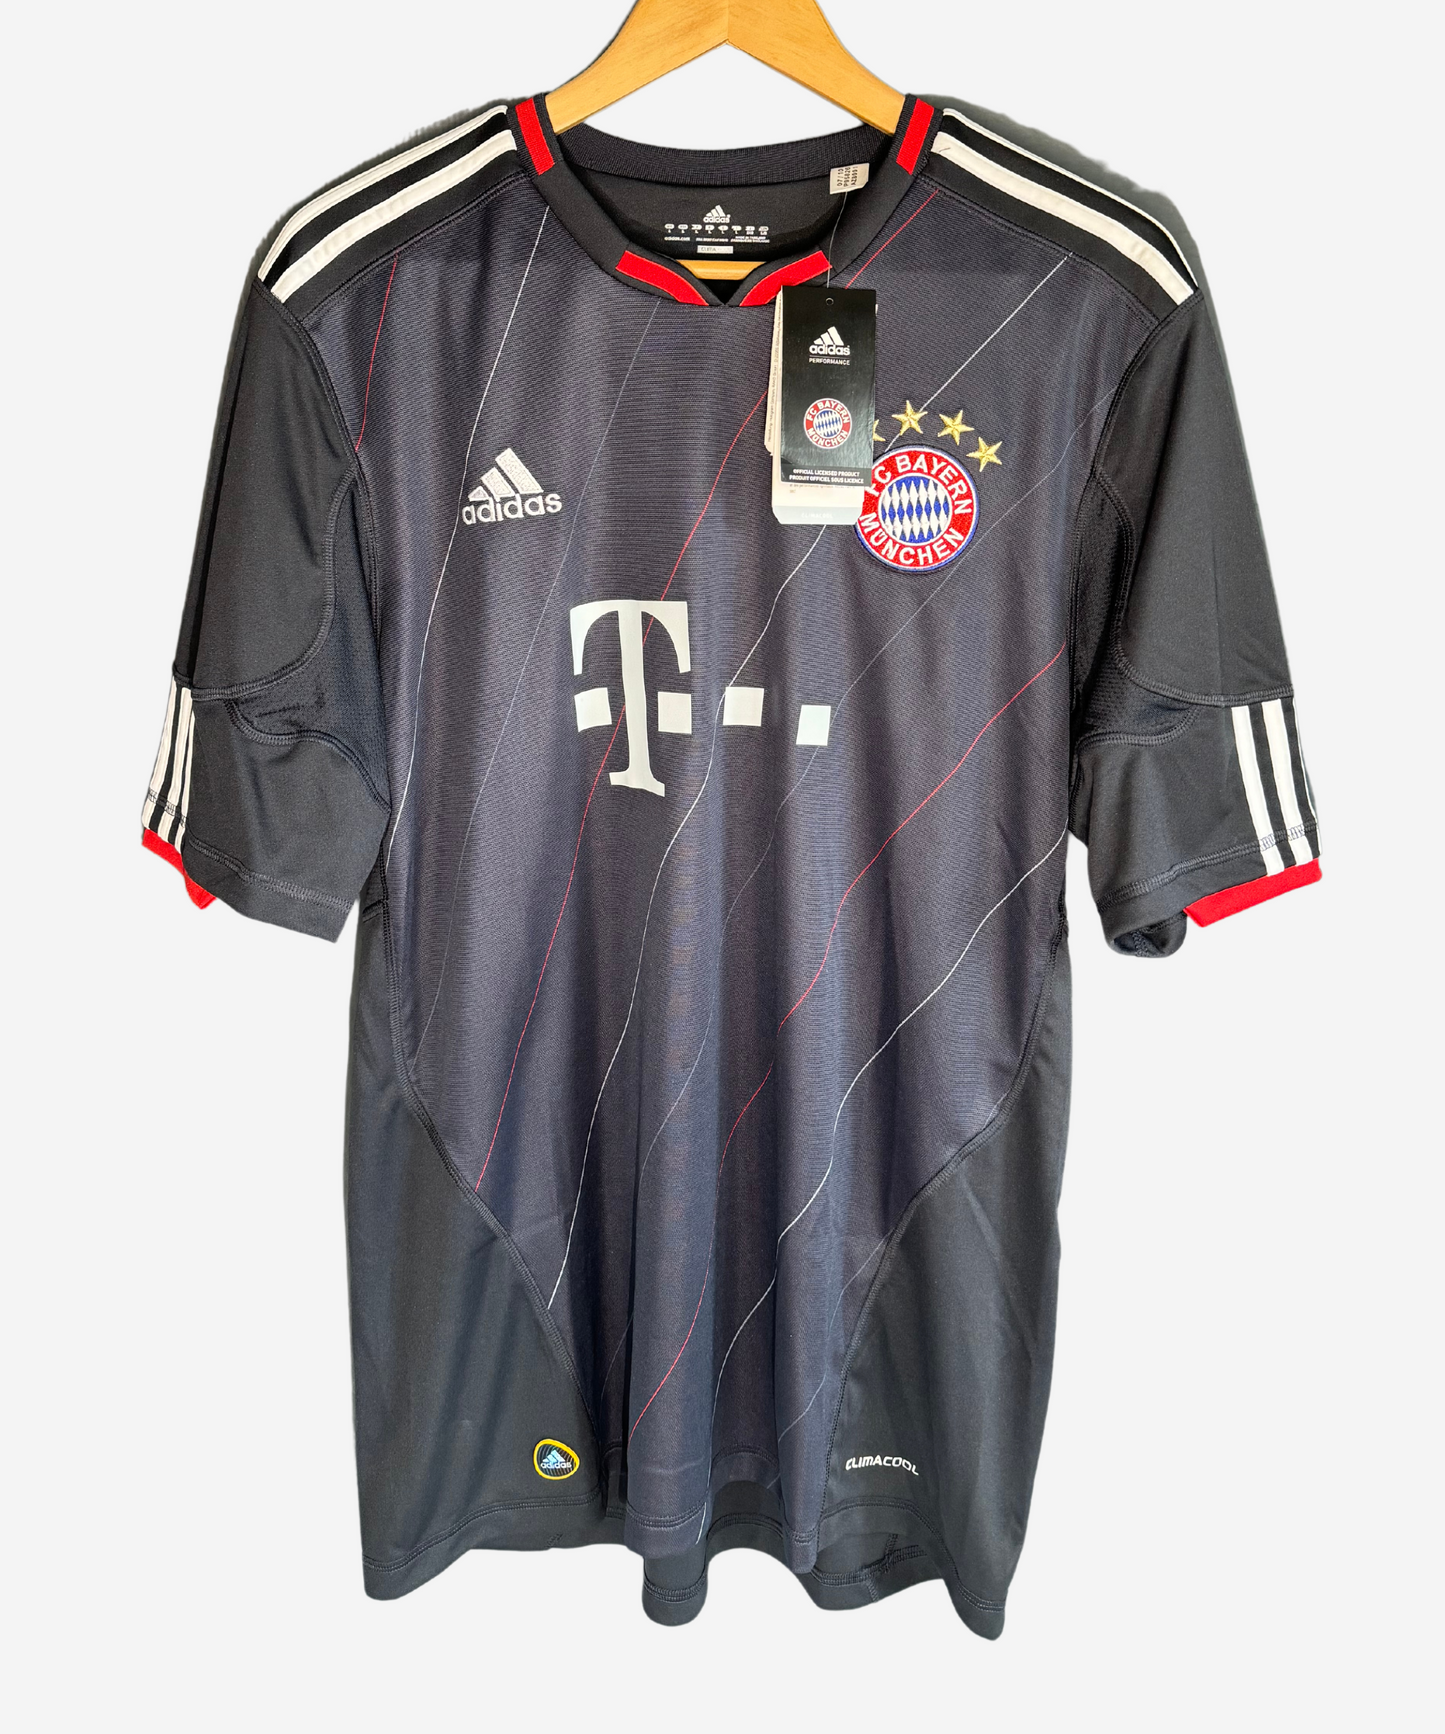 FC Bayern München 2010/11 Klose Third Kit (L) *BNWT*